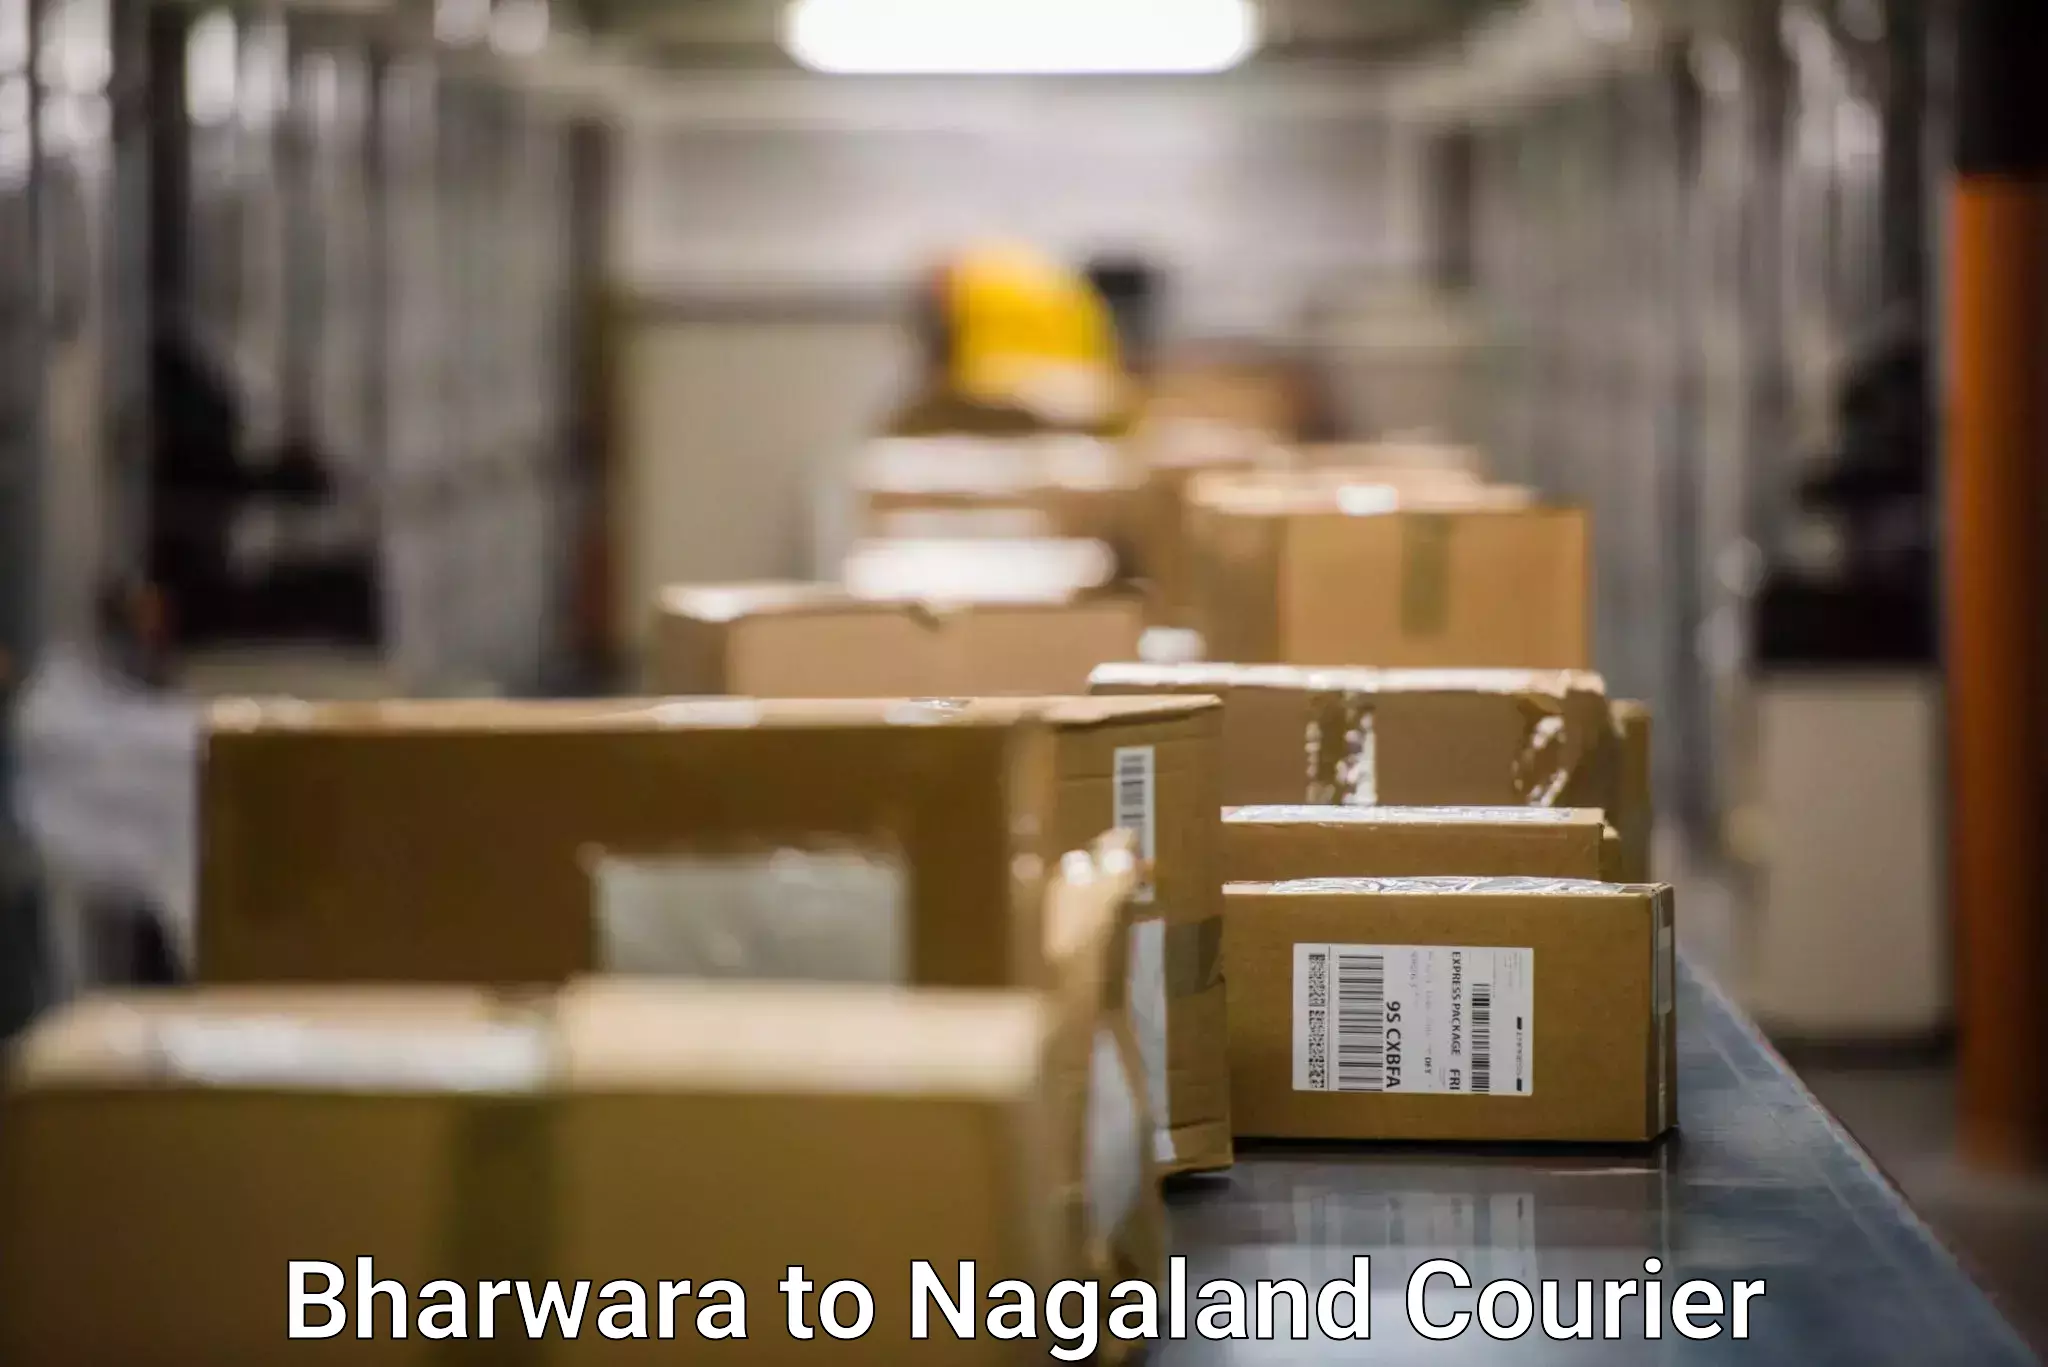 Bulk shipping discounts Bharwara to Nagaland